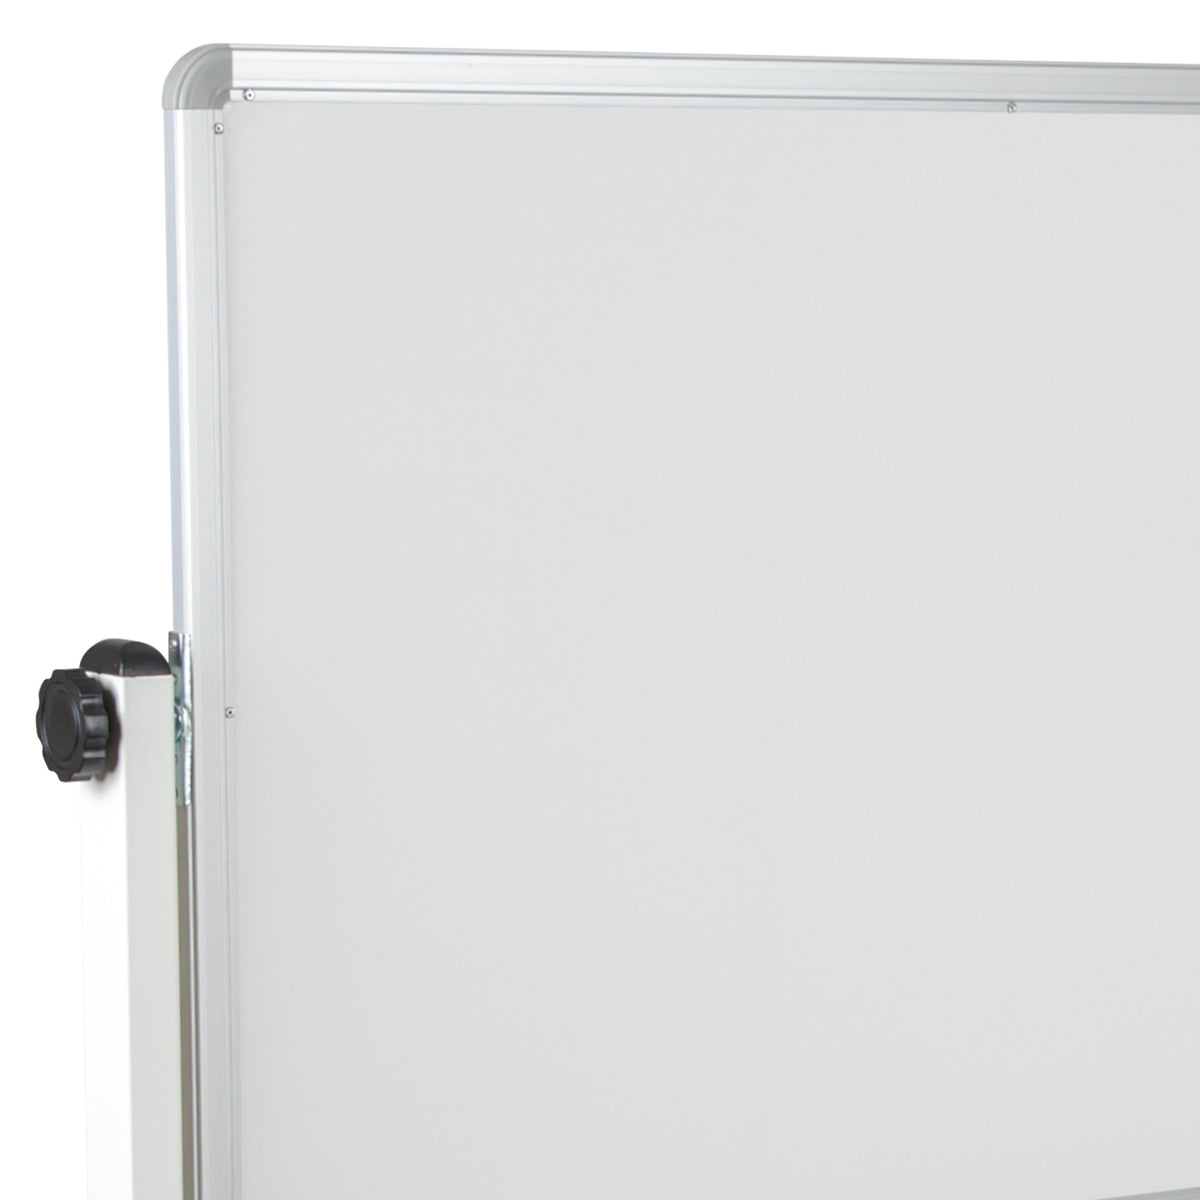 64.25"W x 64.75"H |#| 64.25"W x 64.75"H Reversible Mobile Cork Bulletin & White Board with Pen Tray